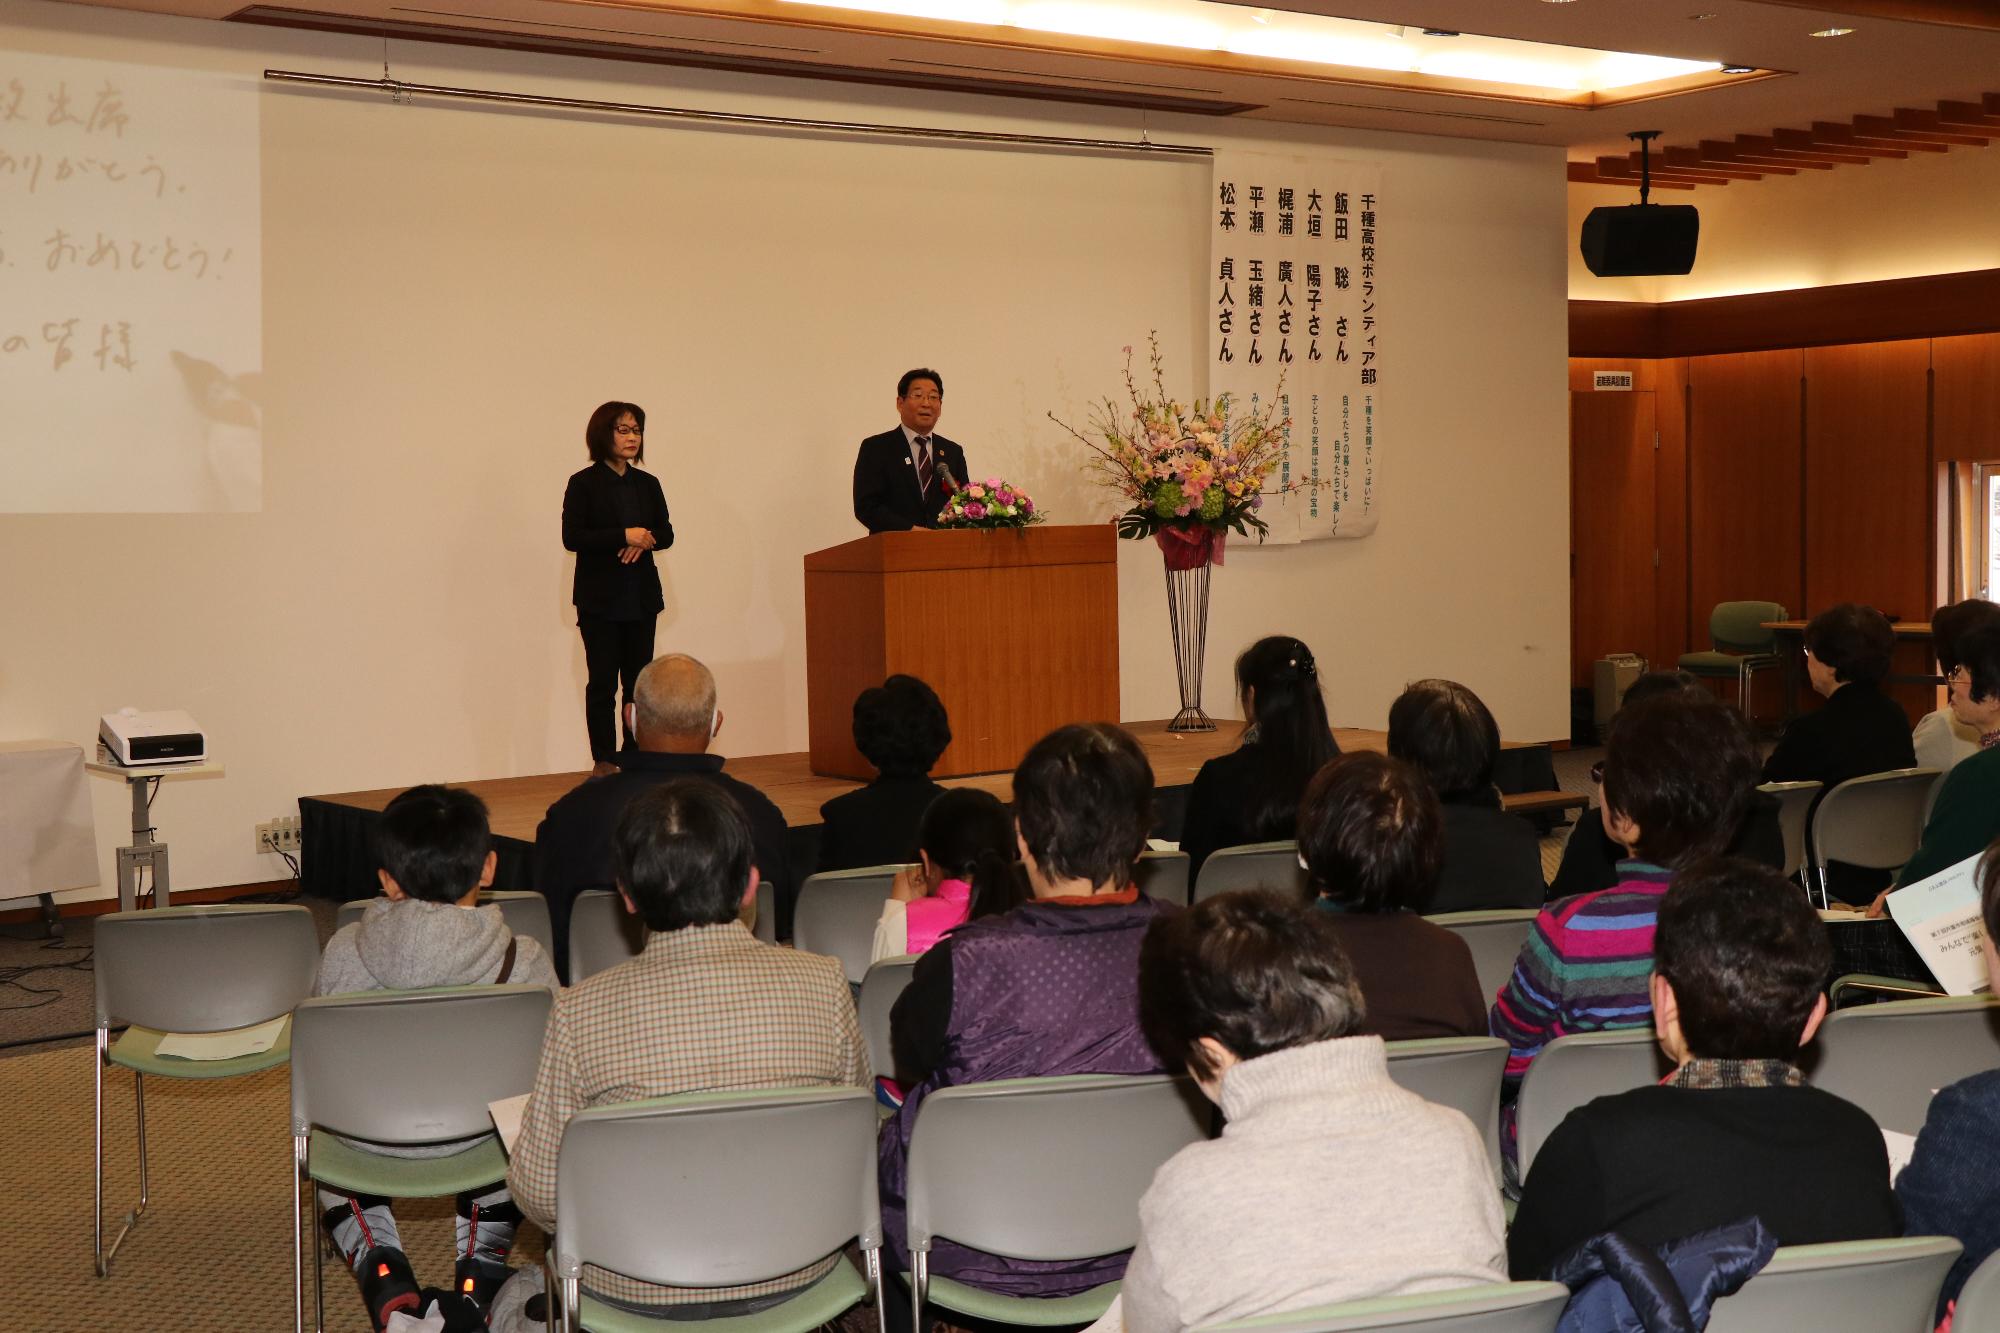 宍粟市地域福祉のつどいに出席した人たちが壇上の市長のスピーチを聞いている写真